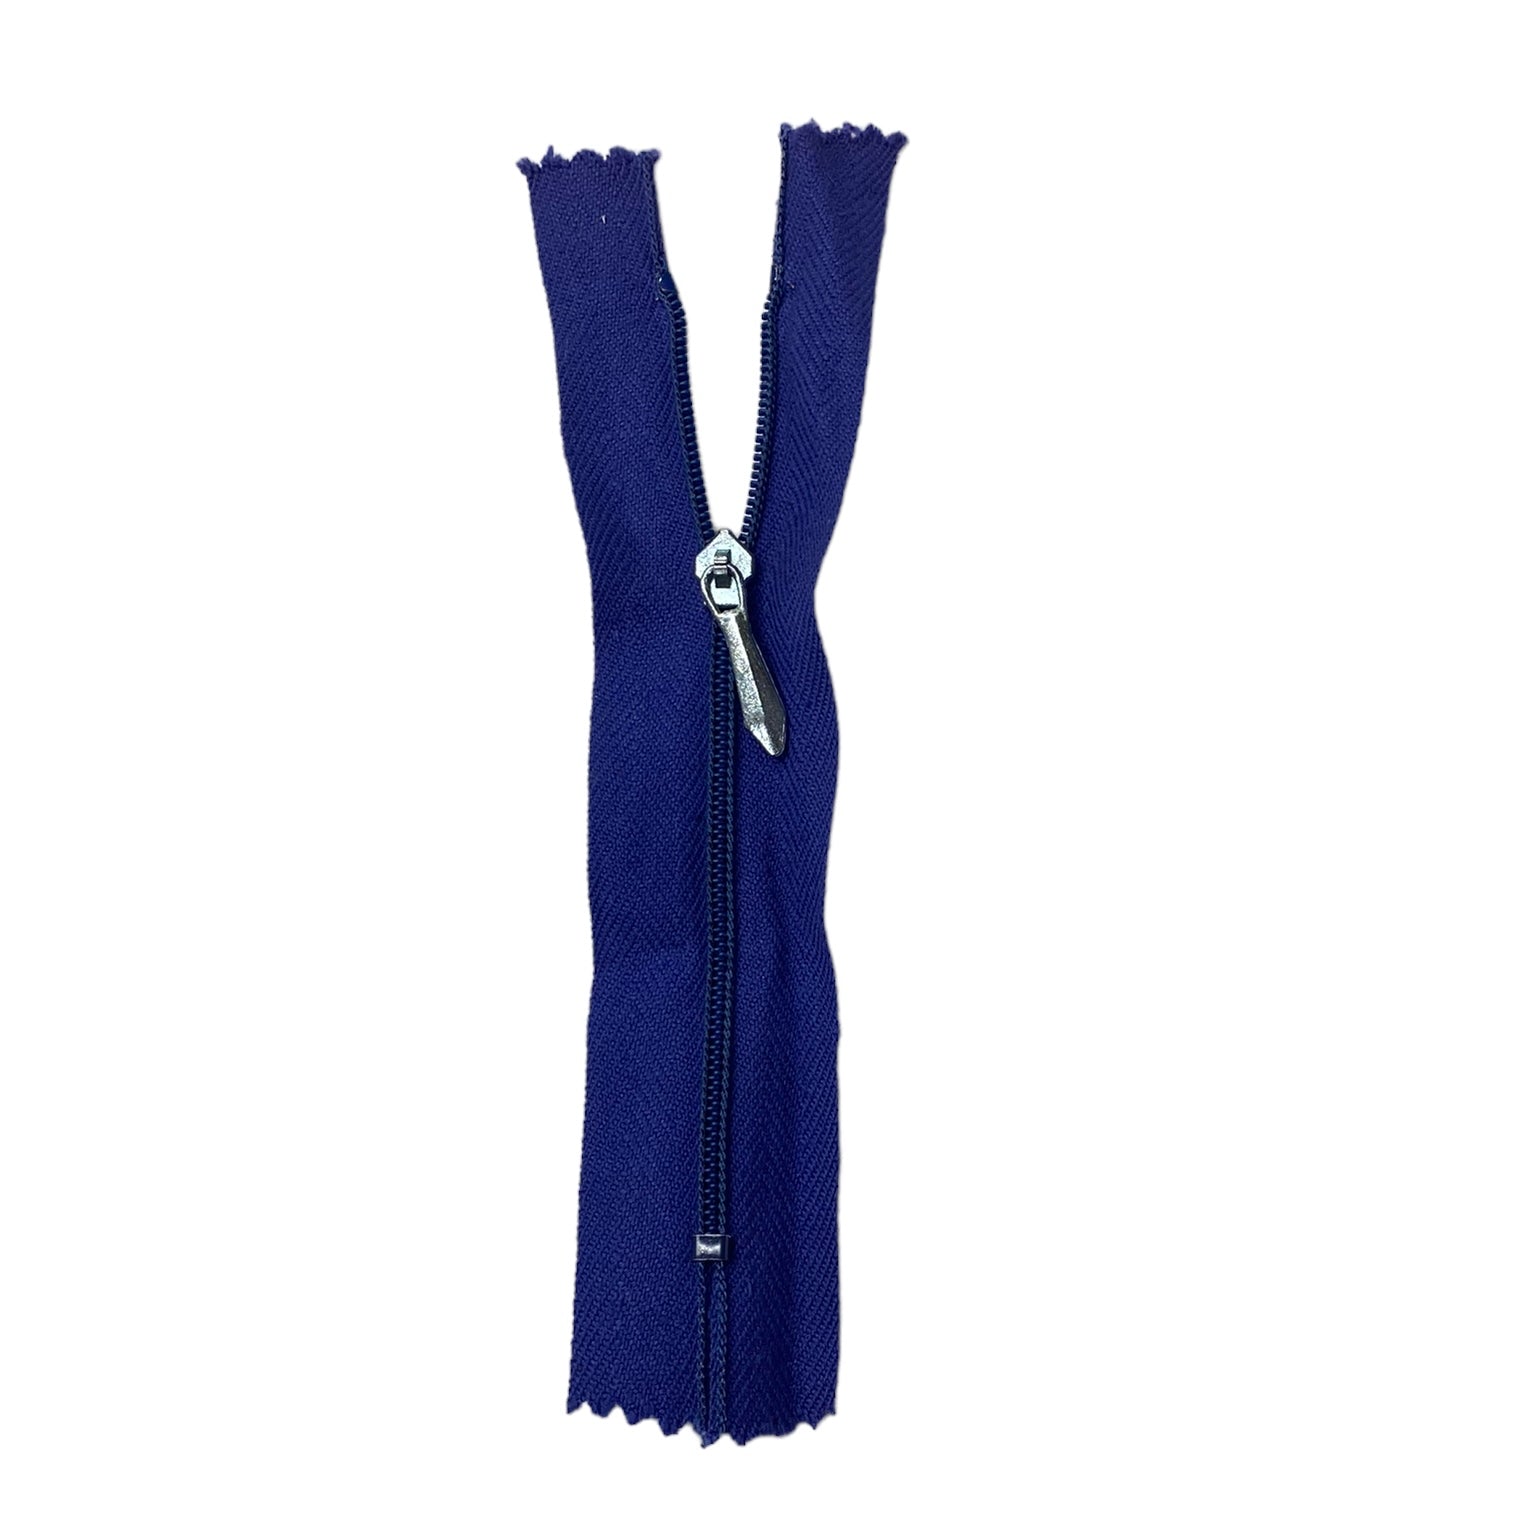 Regular Coil Zipper - Metal Pull - 5” - Blue